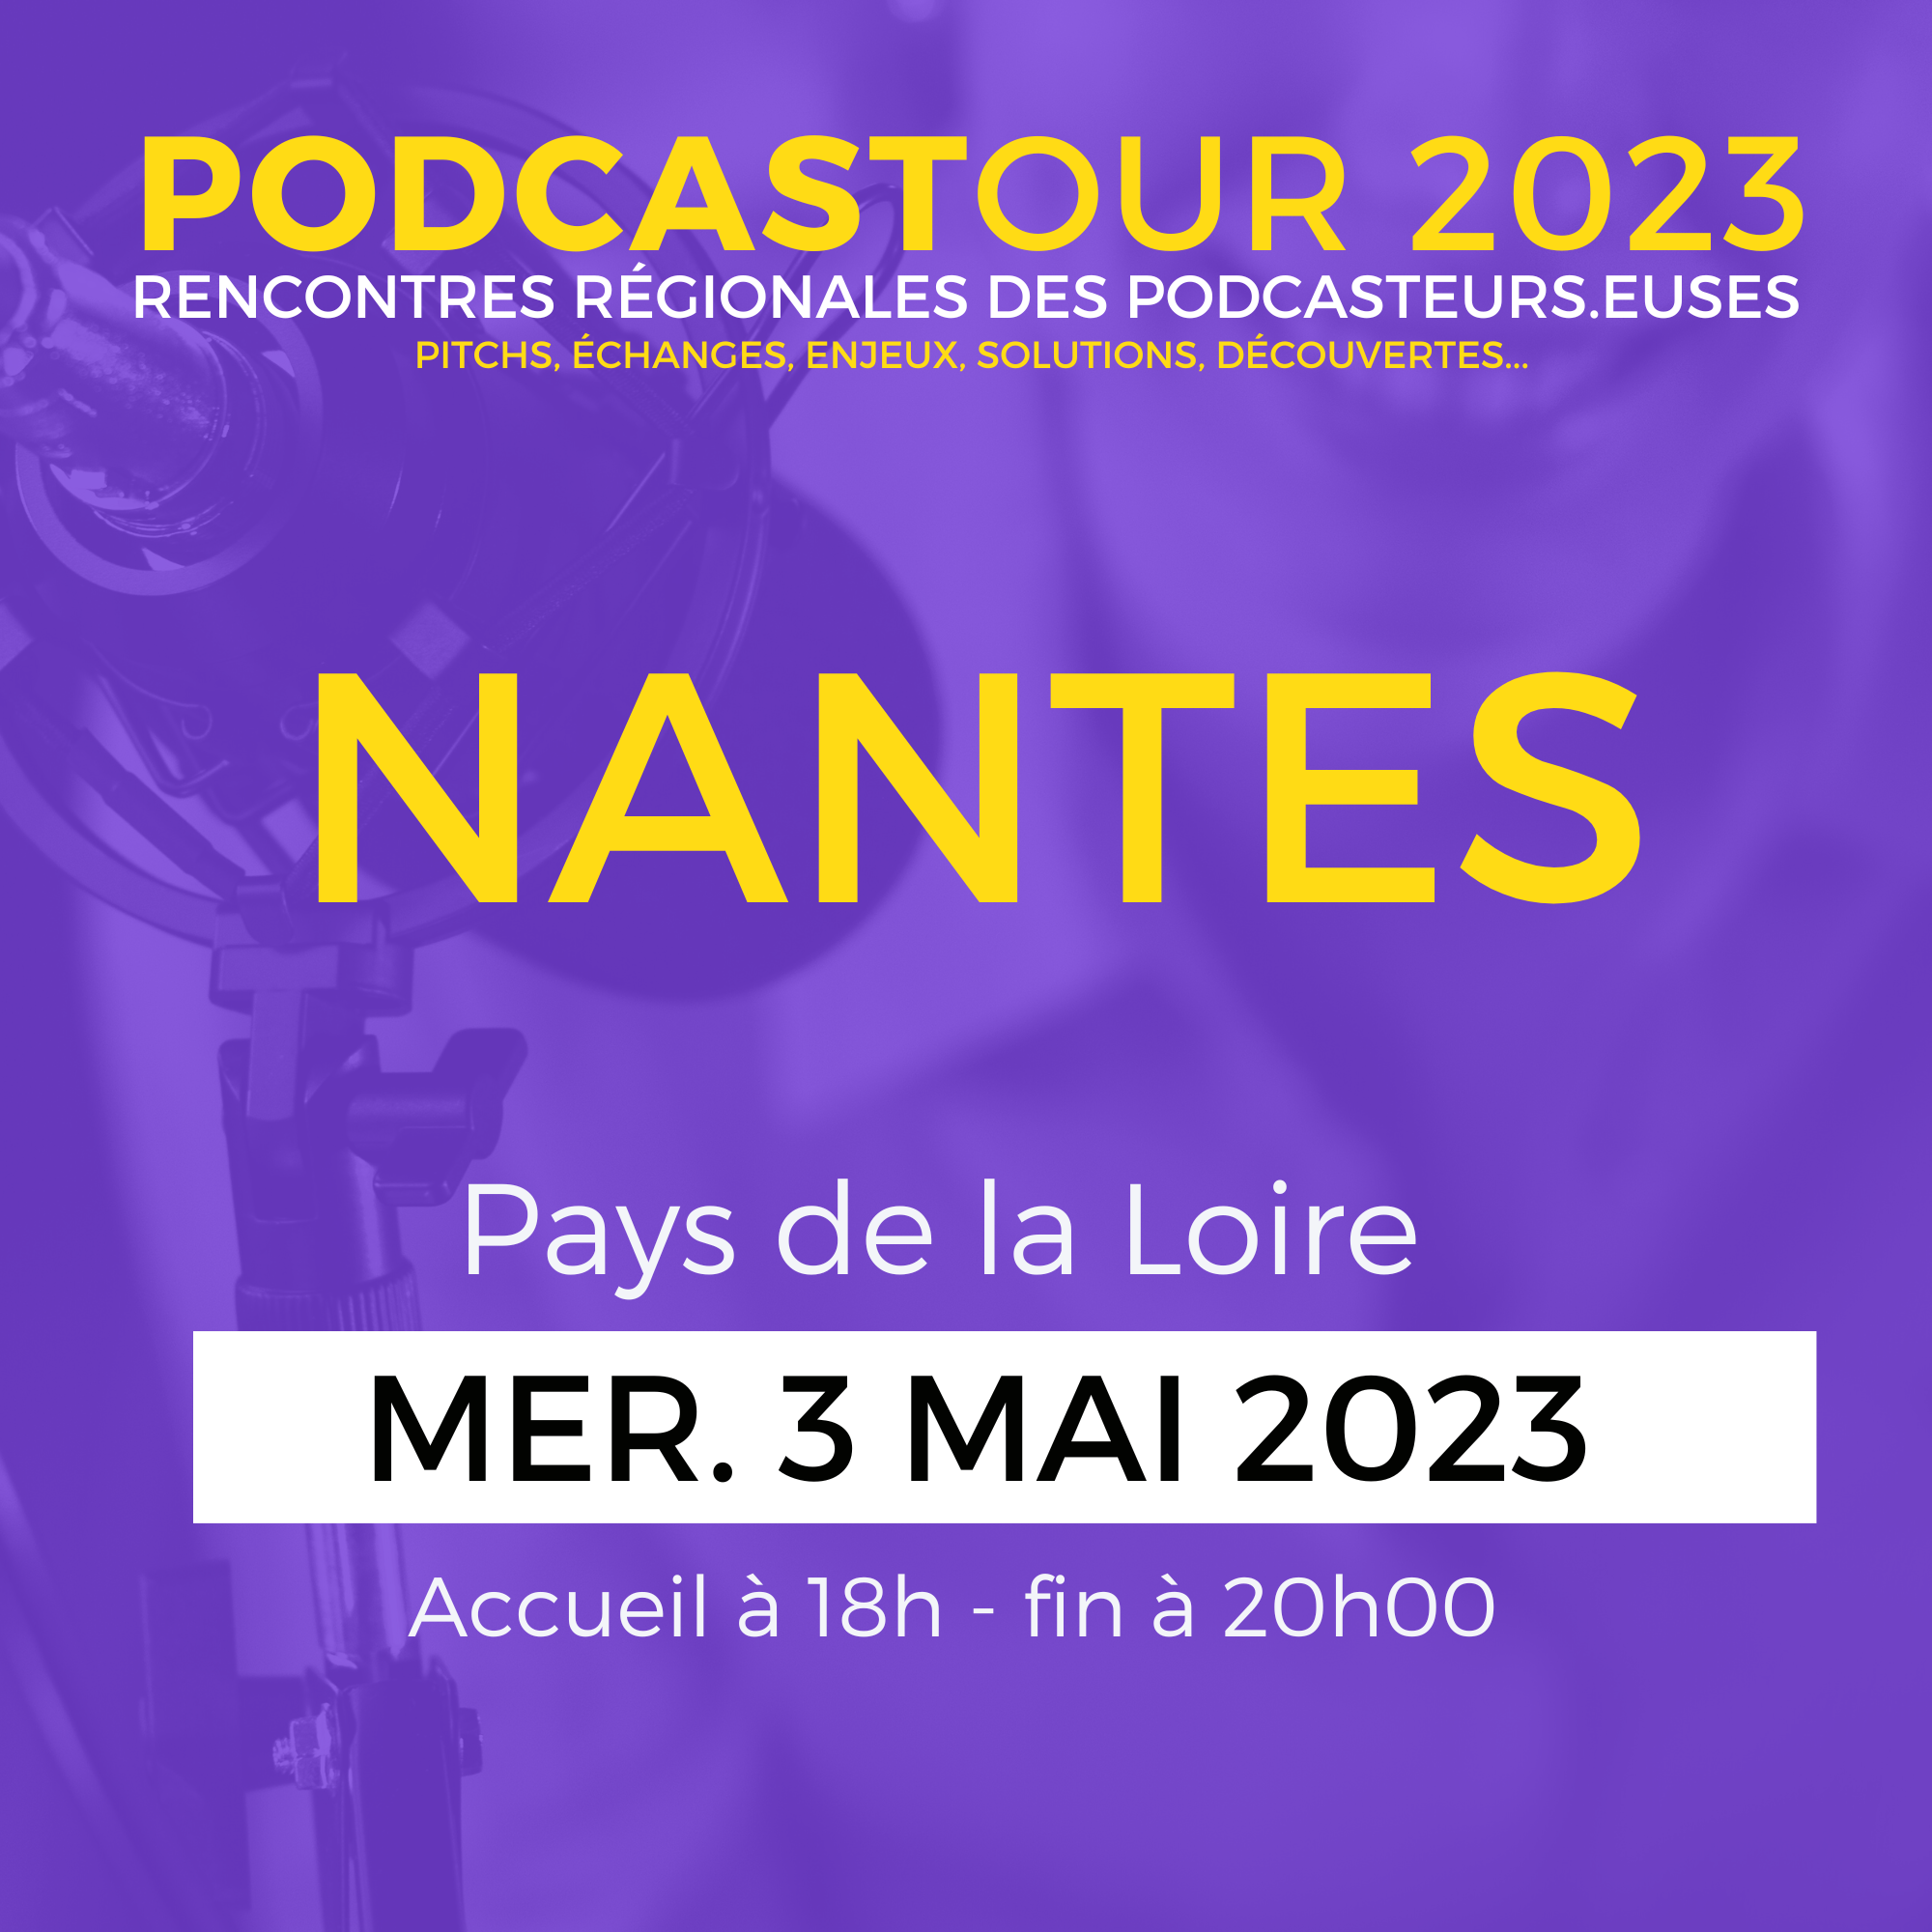 PodcasTour Nantes